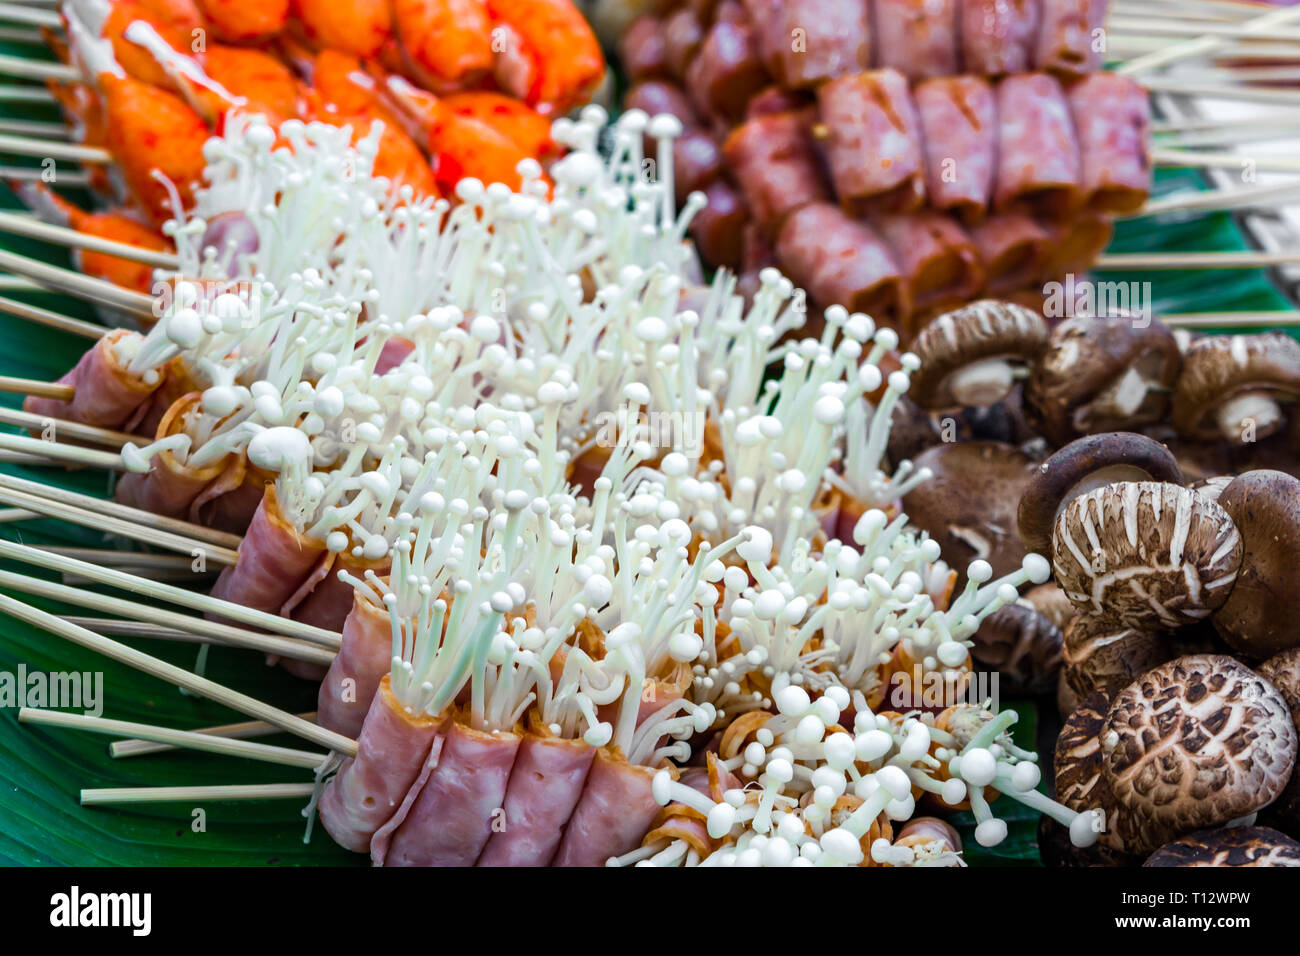 Bacon champignons emballés dans l'alimentation de rue,un marché local en Thaïlande, Asie - asian food délicieux delicasies Banque D'Images